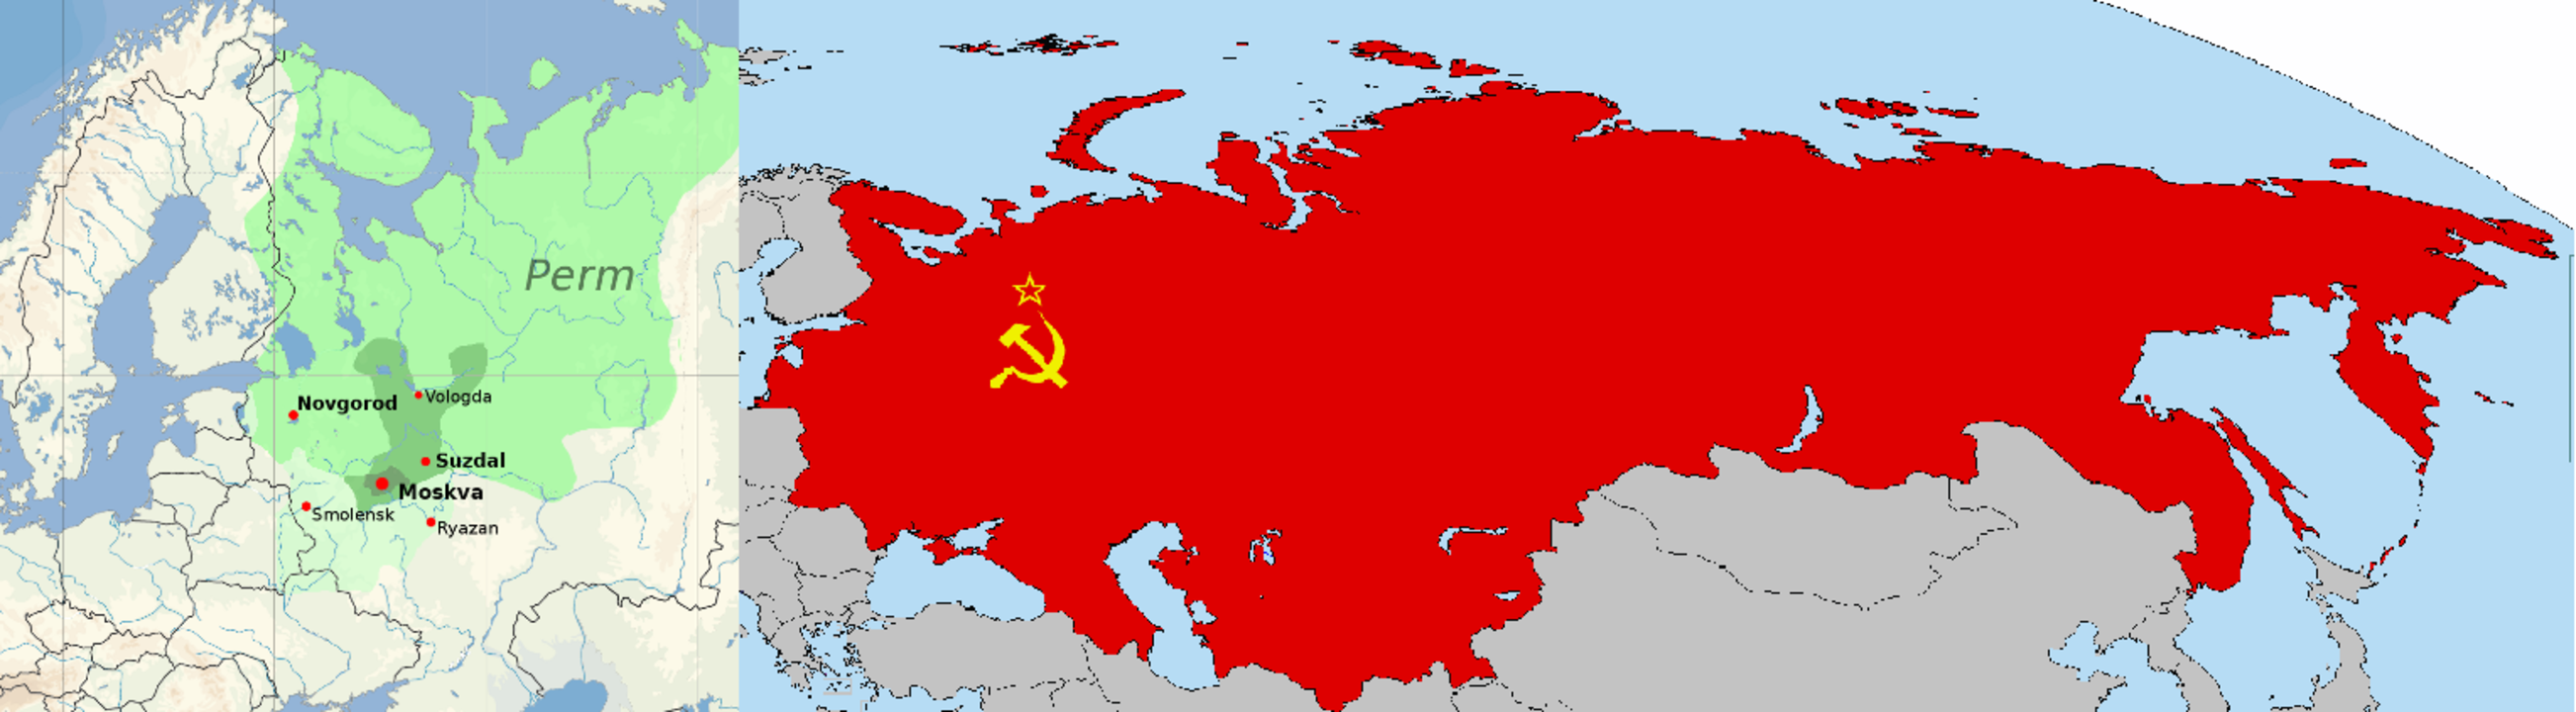 Tìm hiểu thông tin Liên Bang Nga có bao nhiêu nước?